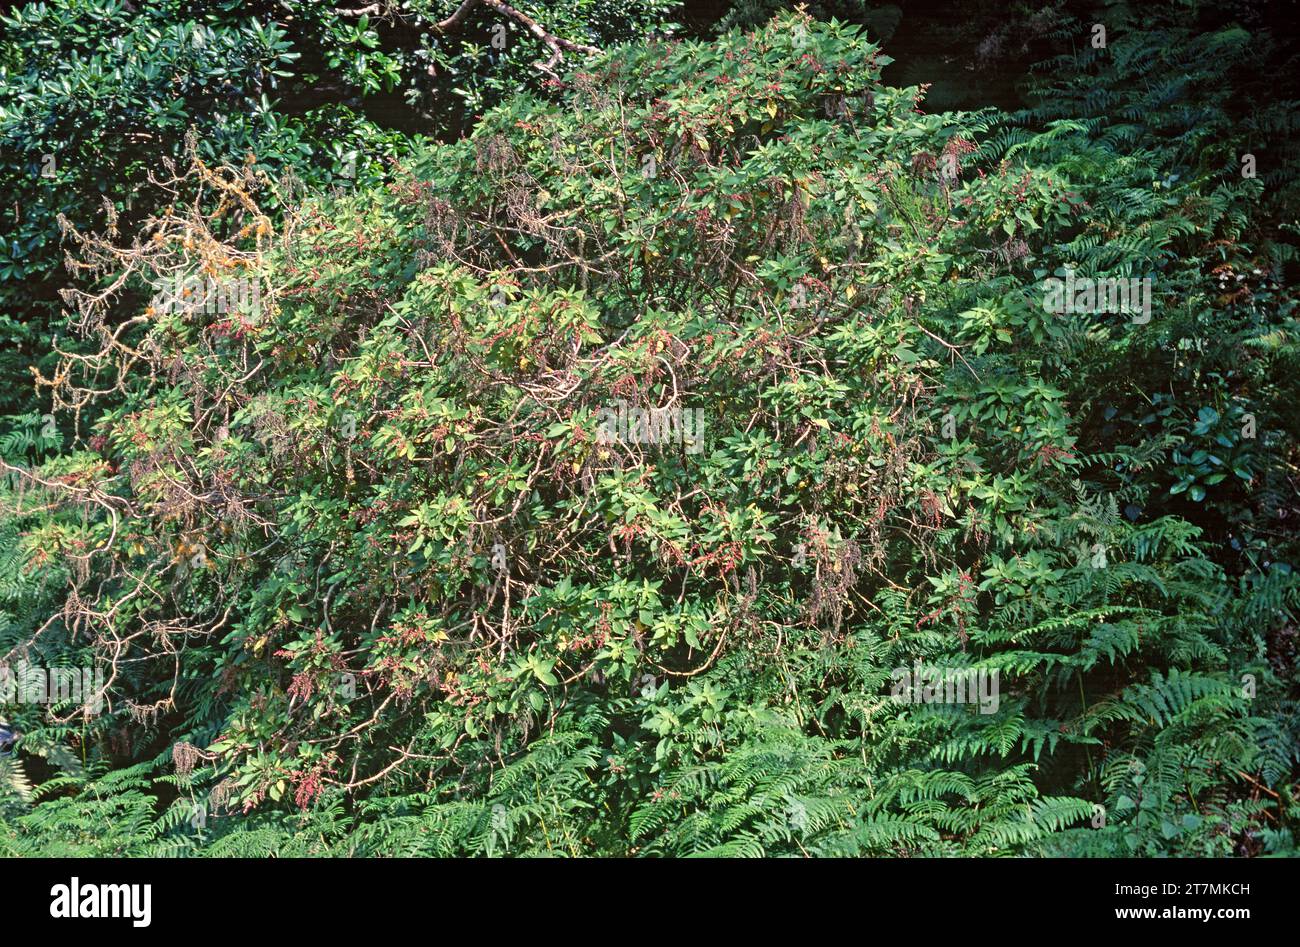 Estrelladera or ortigon de monte (Gesnouinia arborea) is a shrub endemic to Canary Islands except Lanzarote and Fuerteventura. This photo was taken in Stock Photo